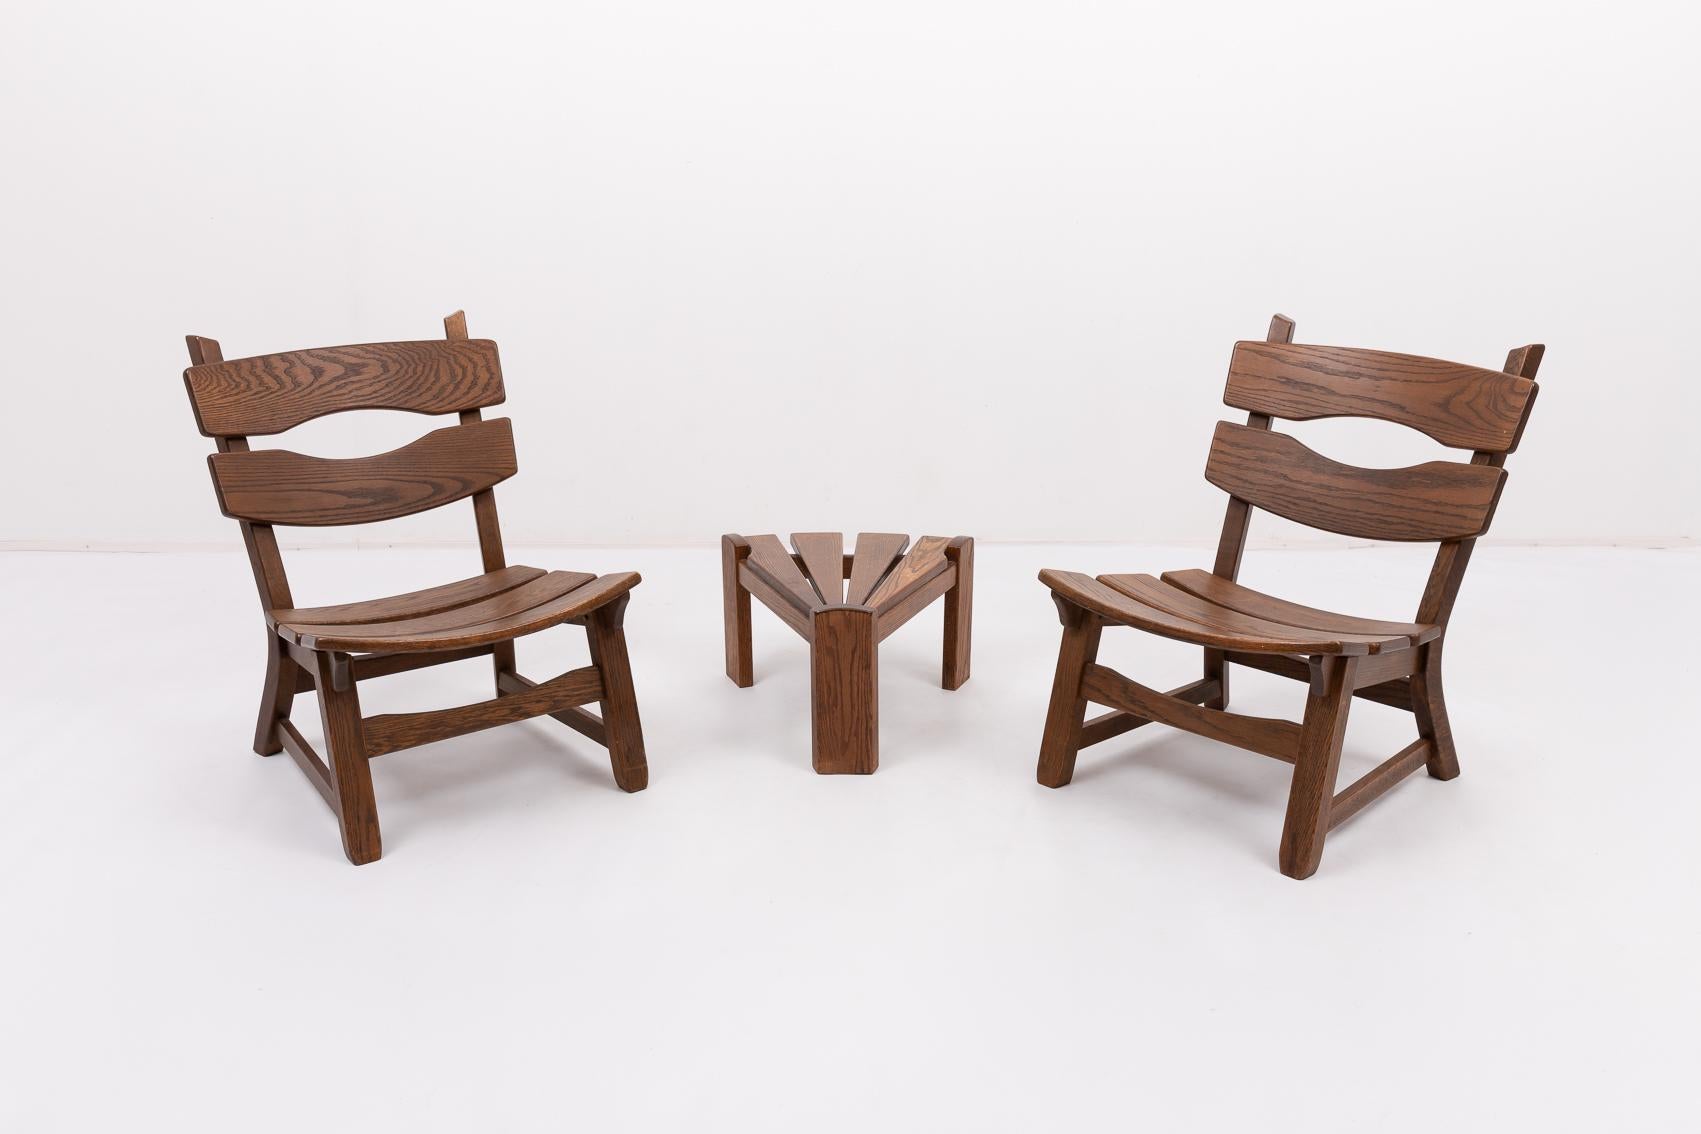 Satz von 4 brutalistischen Stühlen mit Beistelltisch aus gebeizter Eiche von Dittmann & Co für AWA. Er hat eine geschwungene Rückenlehne und einen abgerundeten Sitz. Erinnert an die Entwürfe von Pierre Chapo und Charlotte Perriand.

Bedingung
Gut,